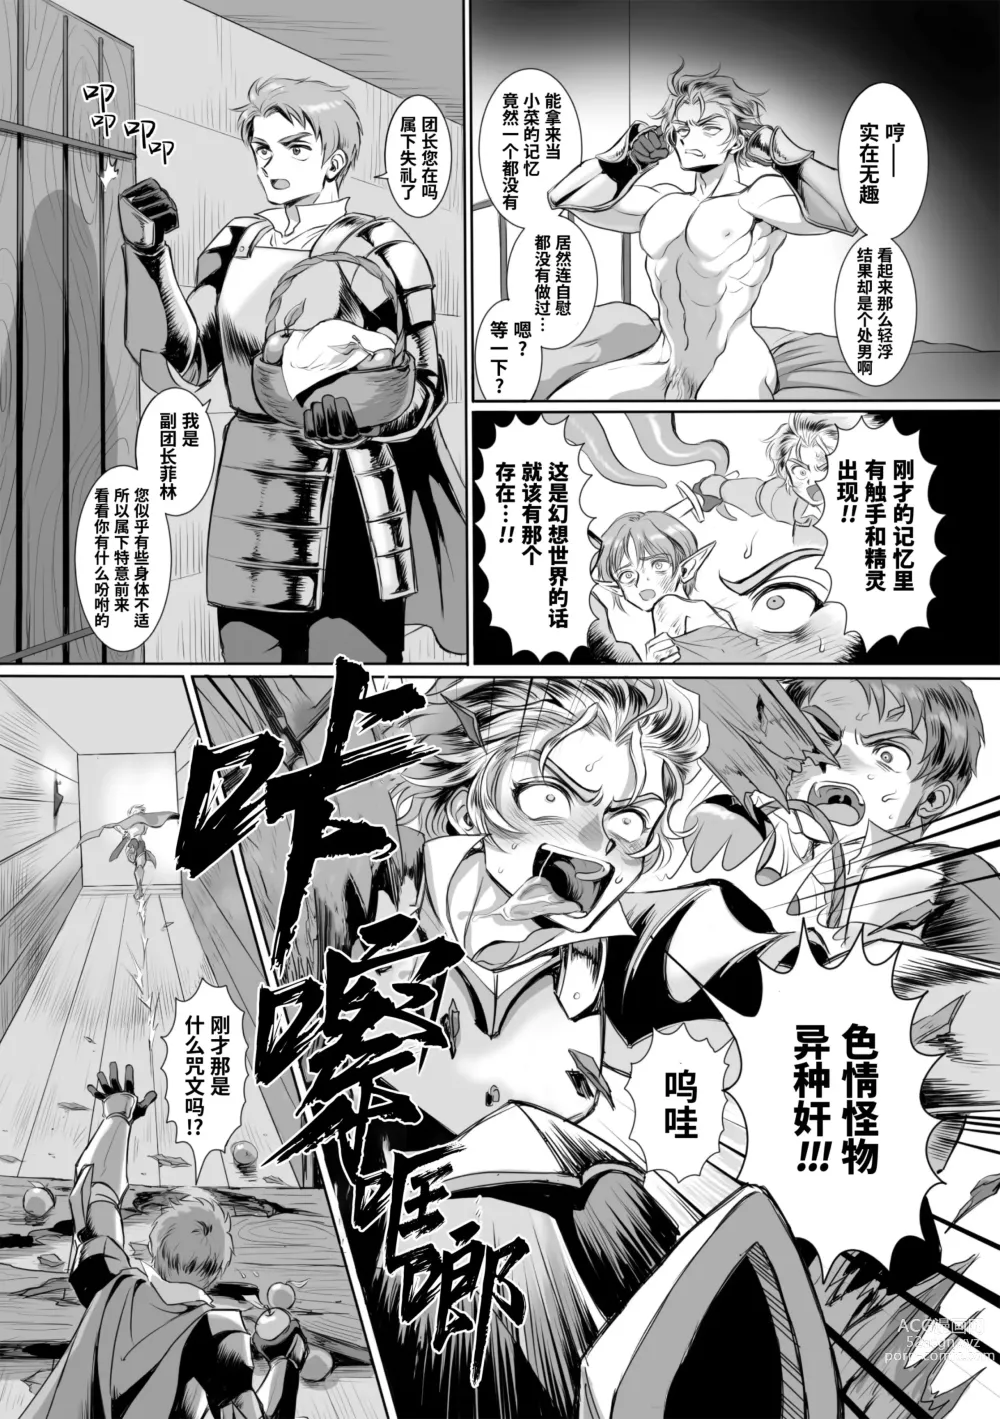 Page 10 of manga  附身奸骑士 斯塔里昂 被恶心男夺取意识凄惨高潮! (decensored)